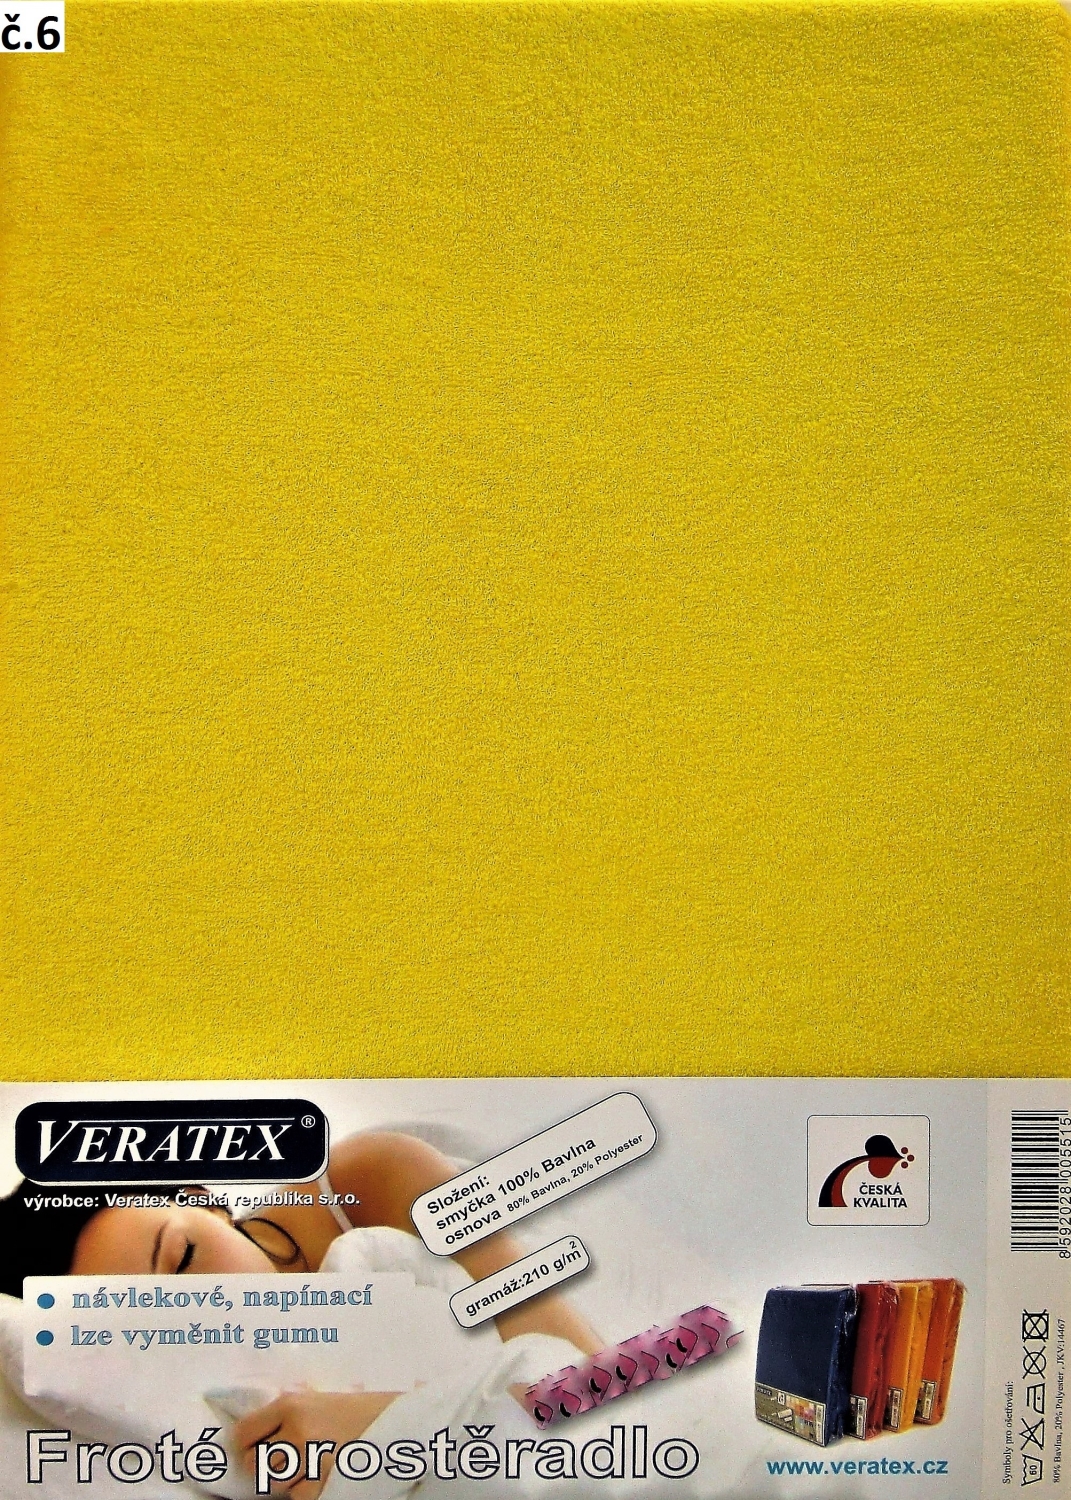 Veratex Froté prostěradlo dvoulůžko 180x200/16cm (č. 6-stř.žlutá)